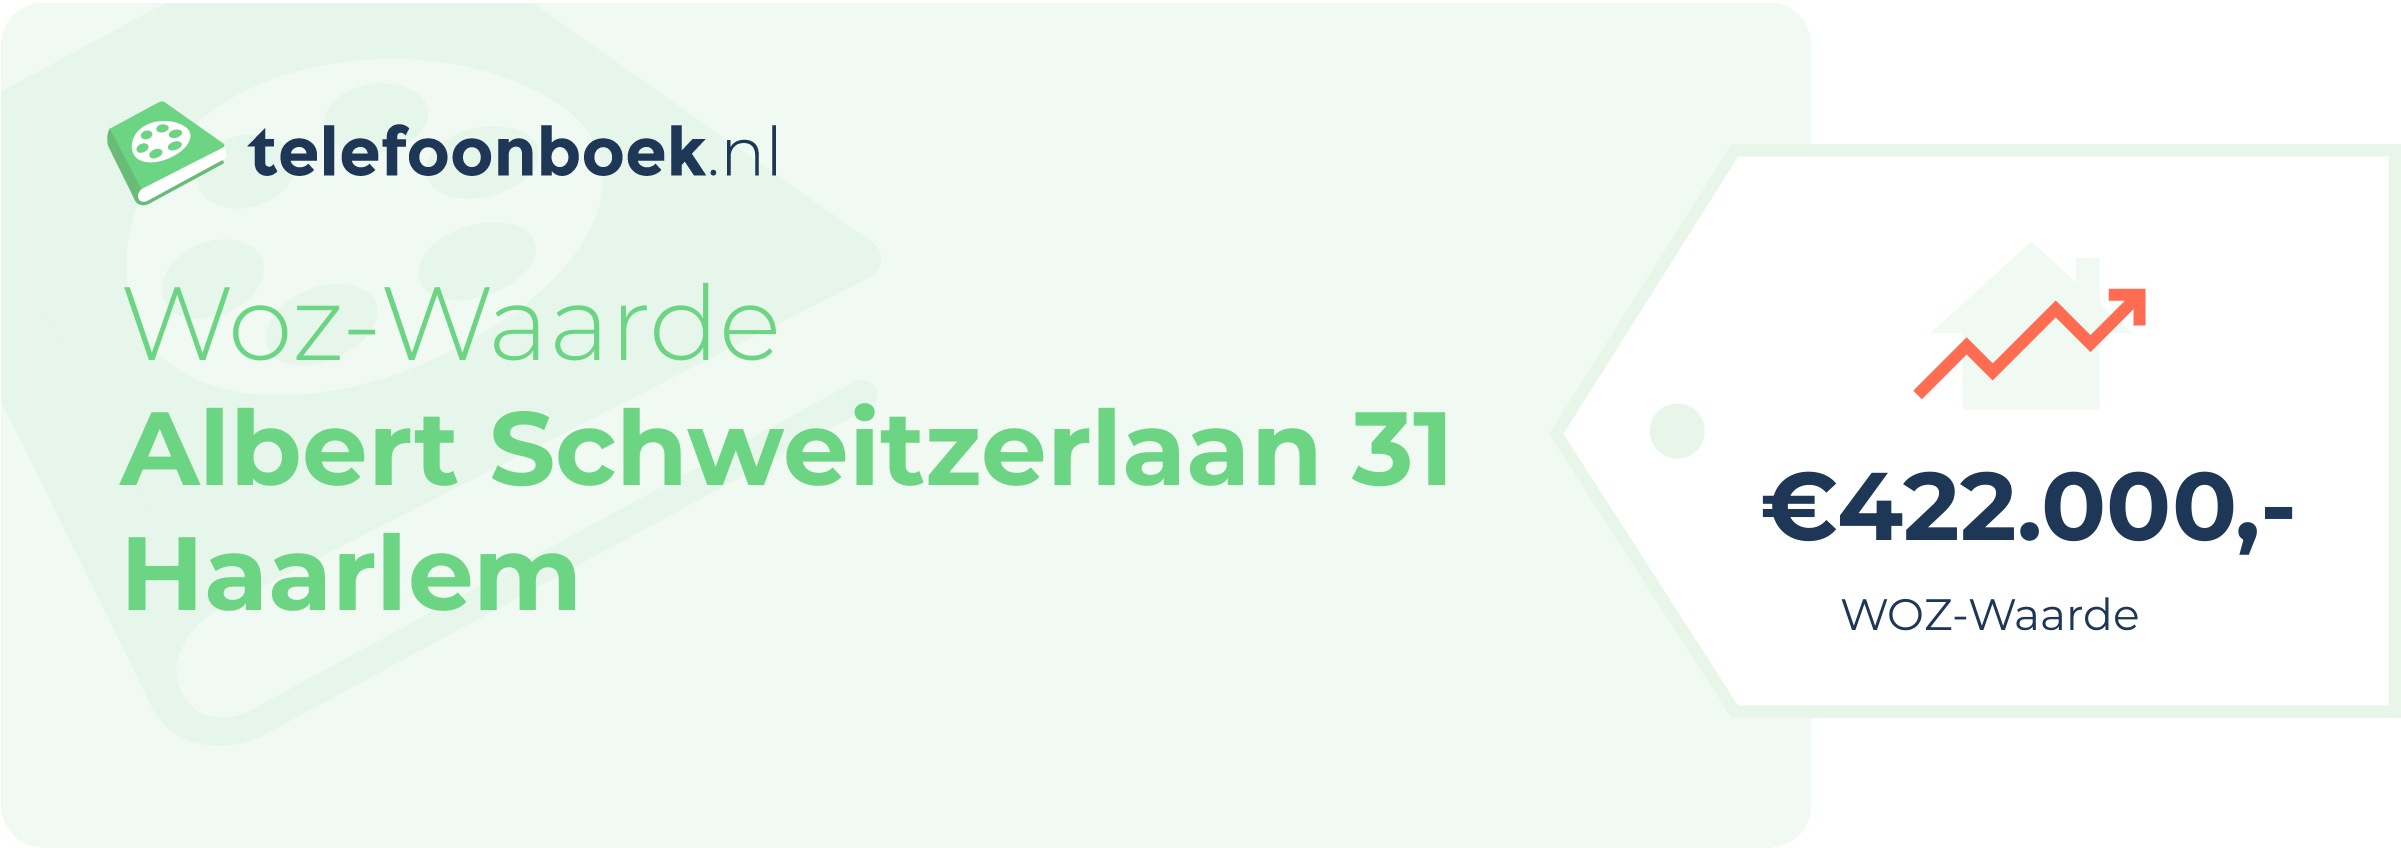 WOZ-waarde Albert Schweitzerlaan 31 Haarlem